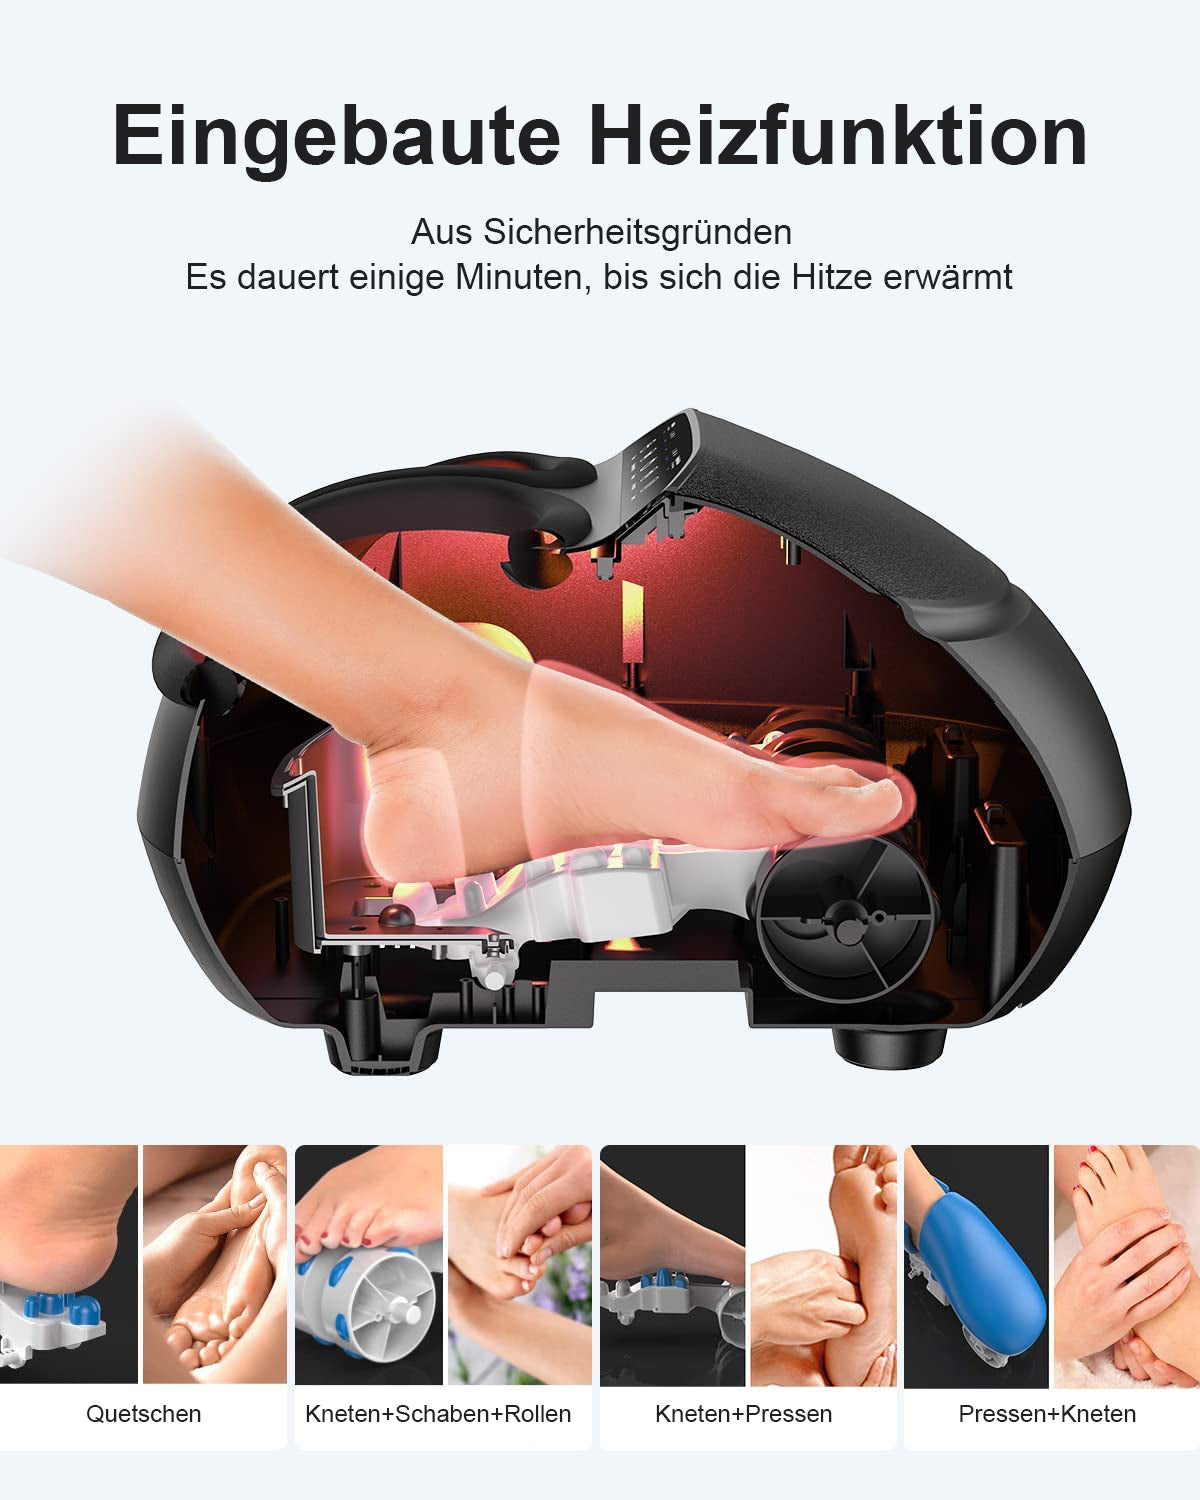 Ein Bild eines Renpho DE Shiatsu Fußmassagegeräts Premium zur Veranschaulichung der Wellness- und Fitnessvorteile.